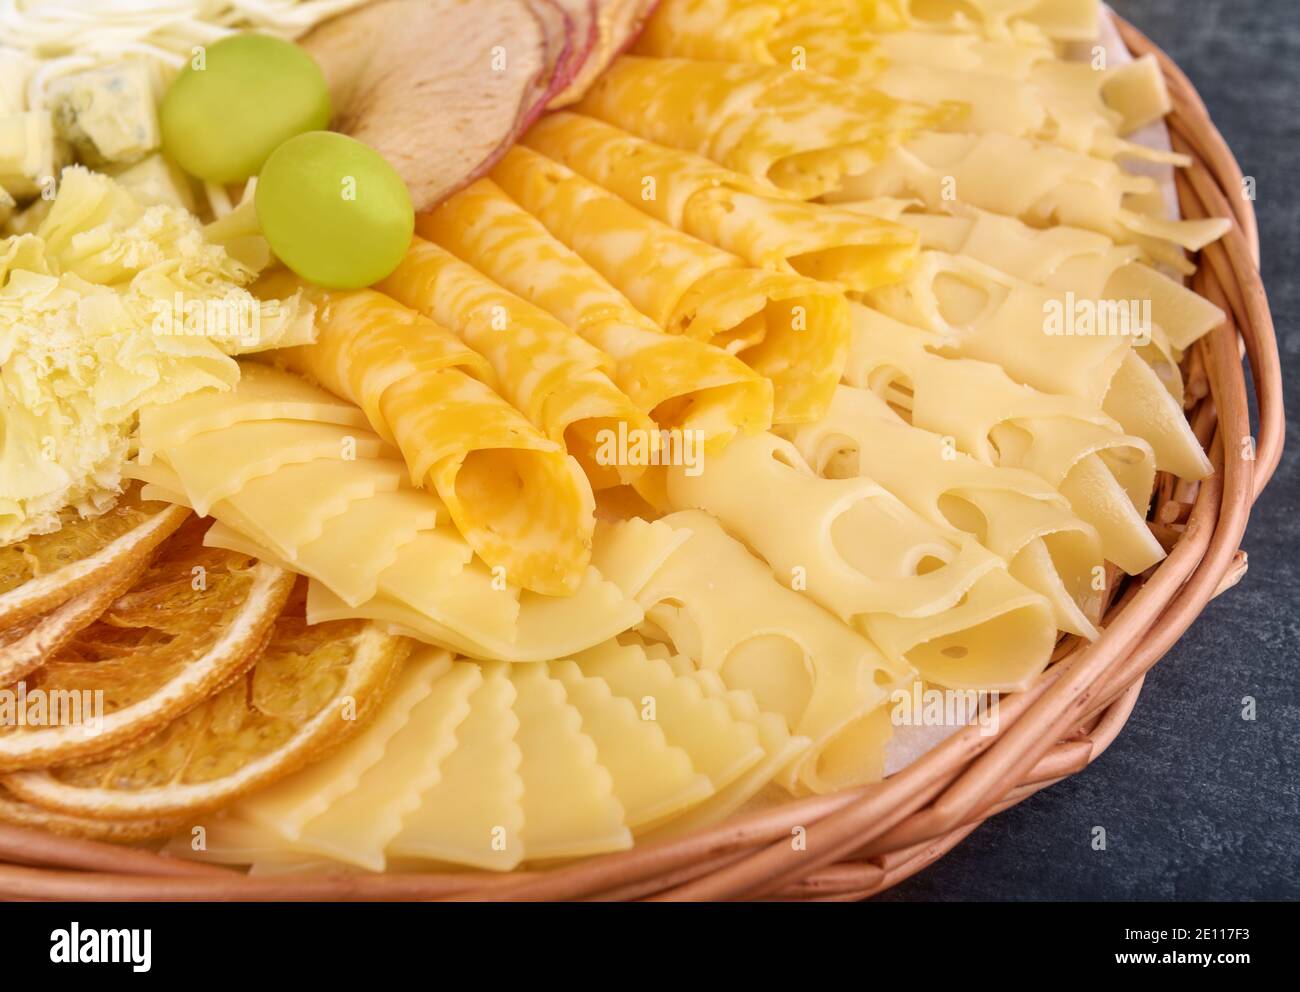 Verschiedene Käsesorten mit getrockneten Orangenscheiben, getrockneten Apfelscheiben und Trauben in Nahaufnahme Stockfoto